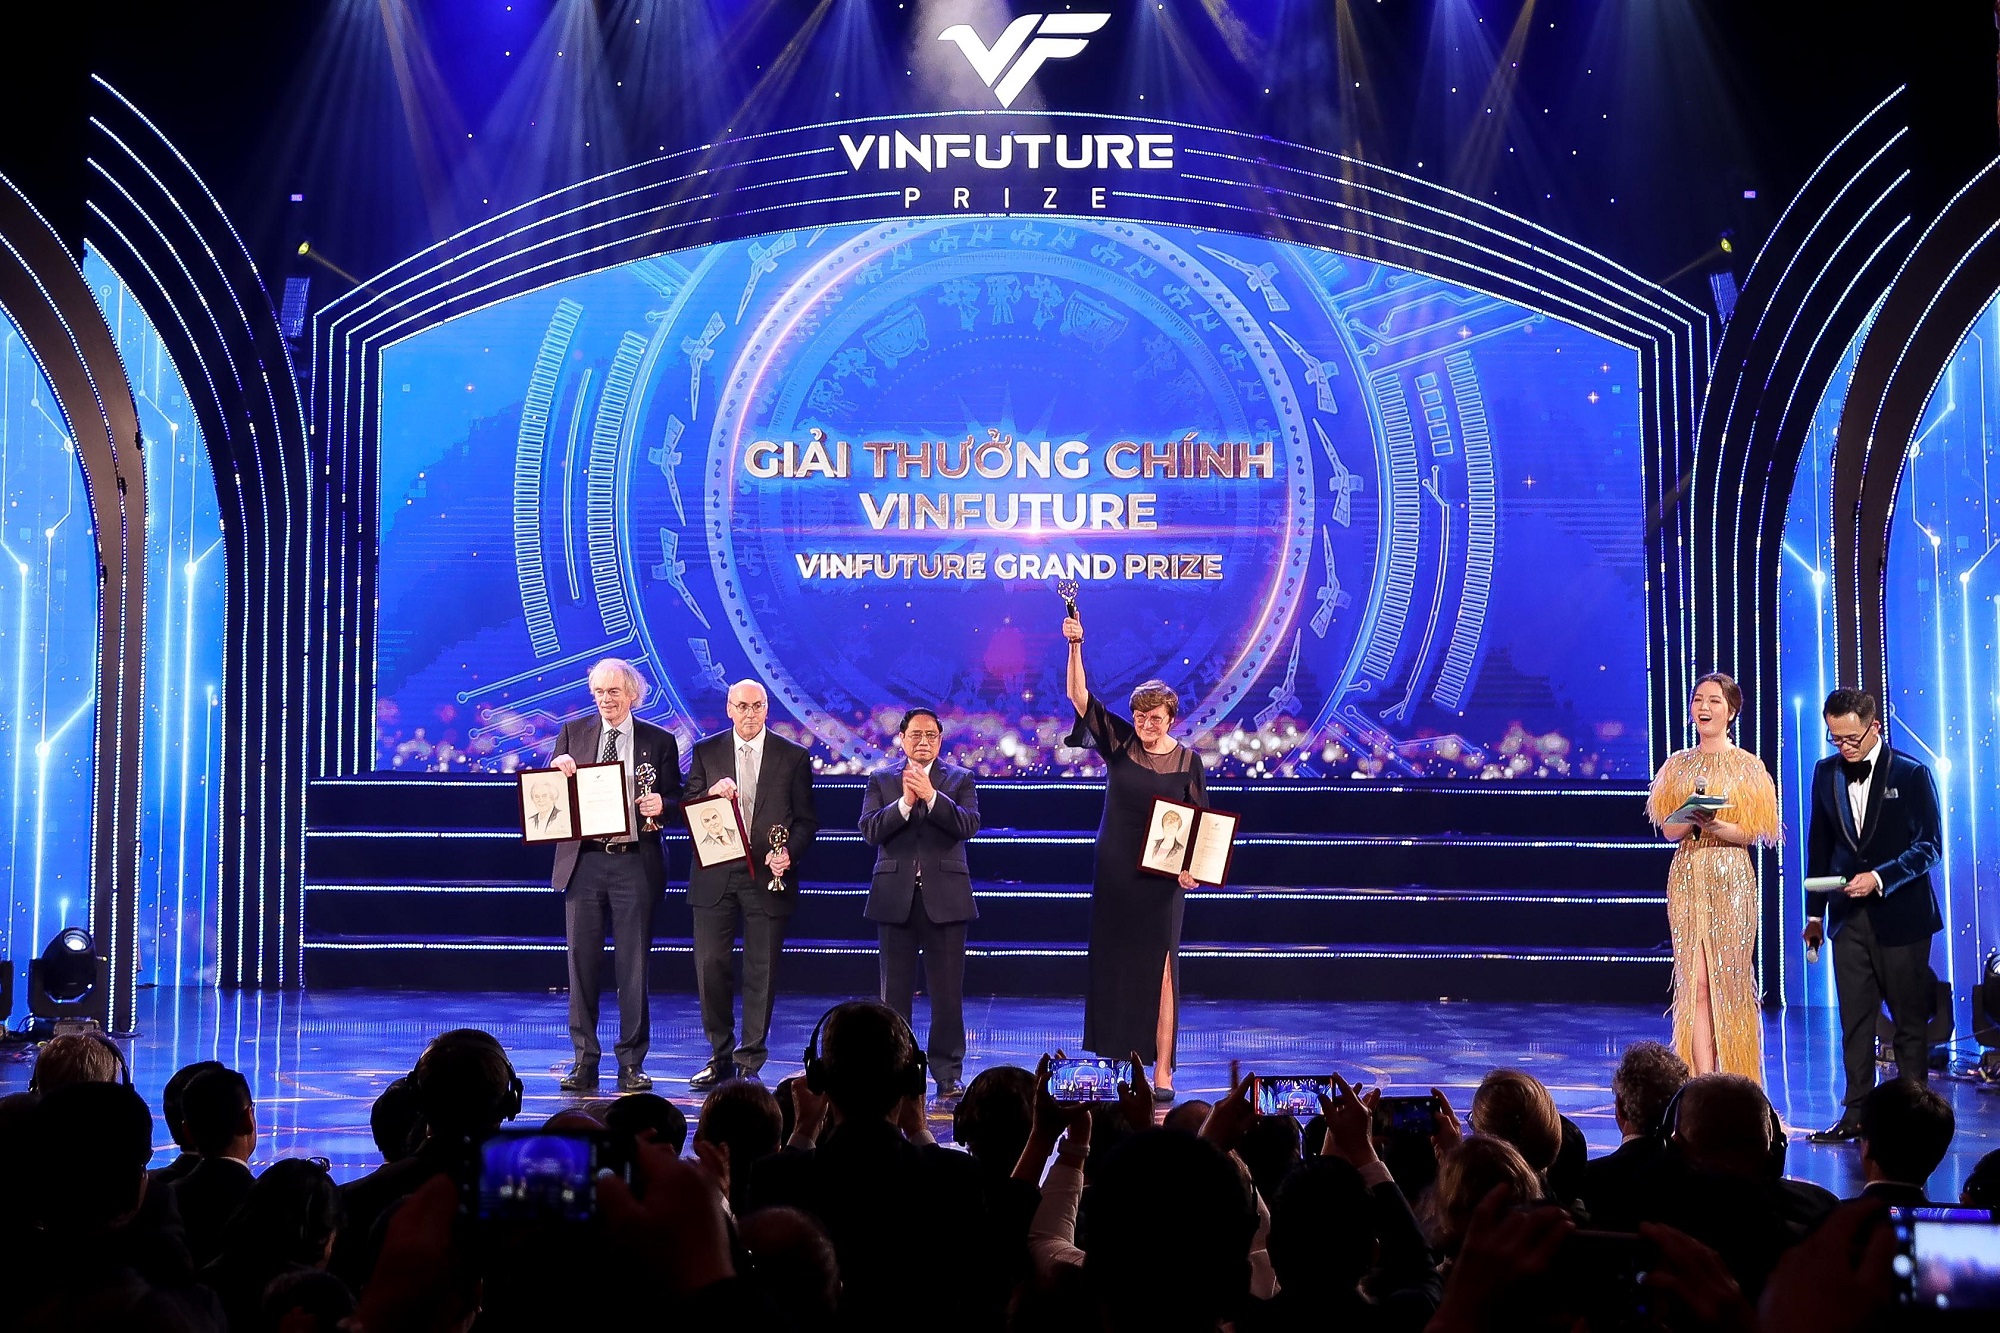 Kinh tế - VinFuture công bố chủ nhân các giải thưởng phụng sự nhân loại năm 2021 (Hình 9).